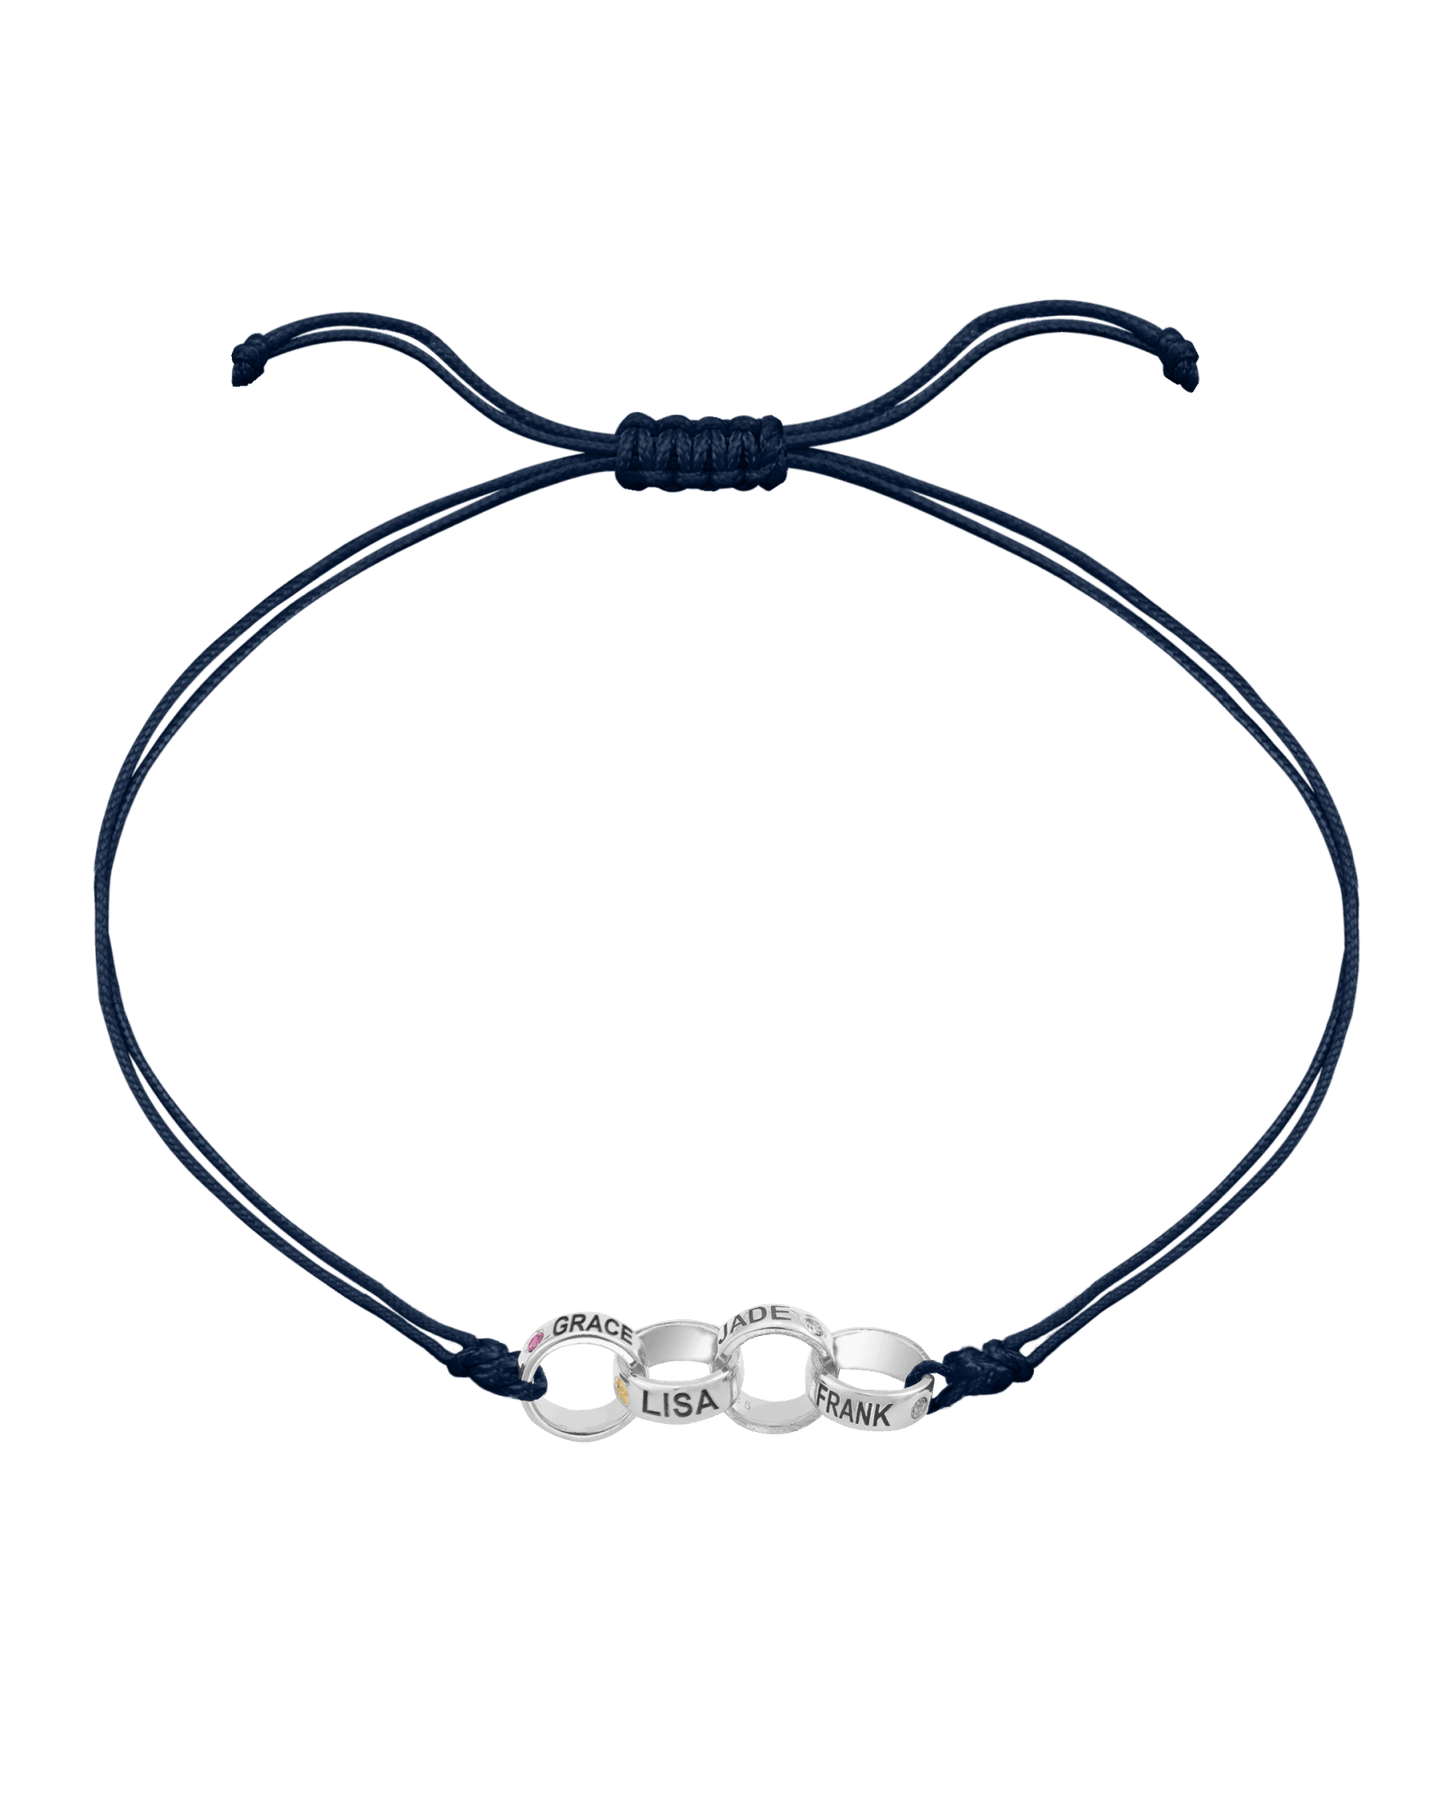 Engravable Links of Love - 14K White Gold Bracelets magal-dev 4 Navy Blue 